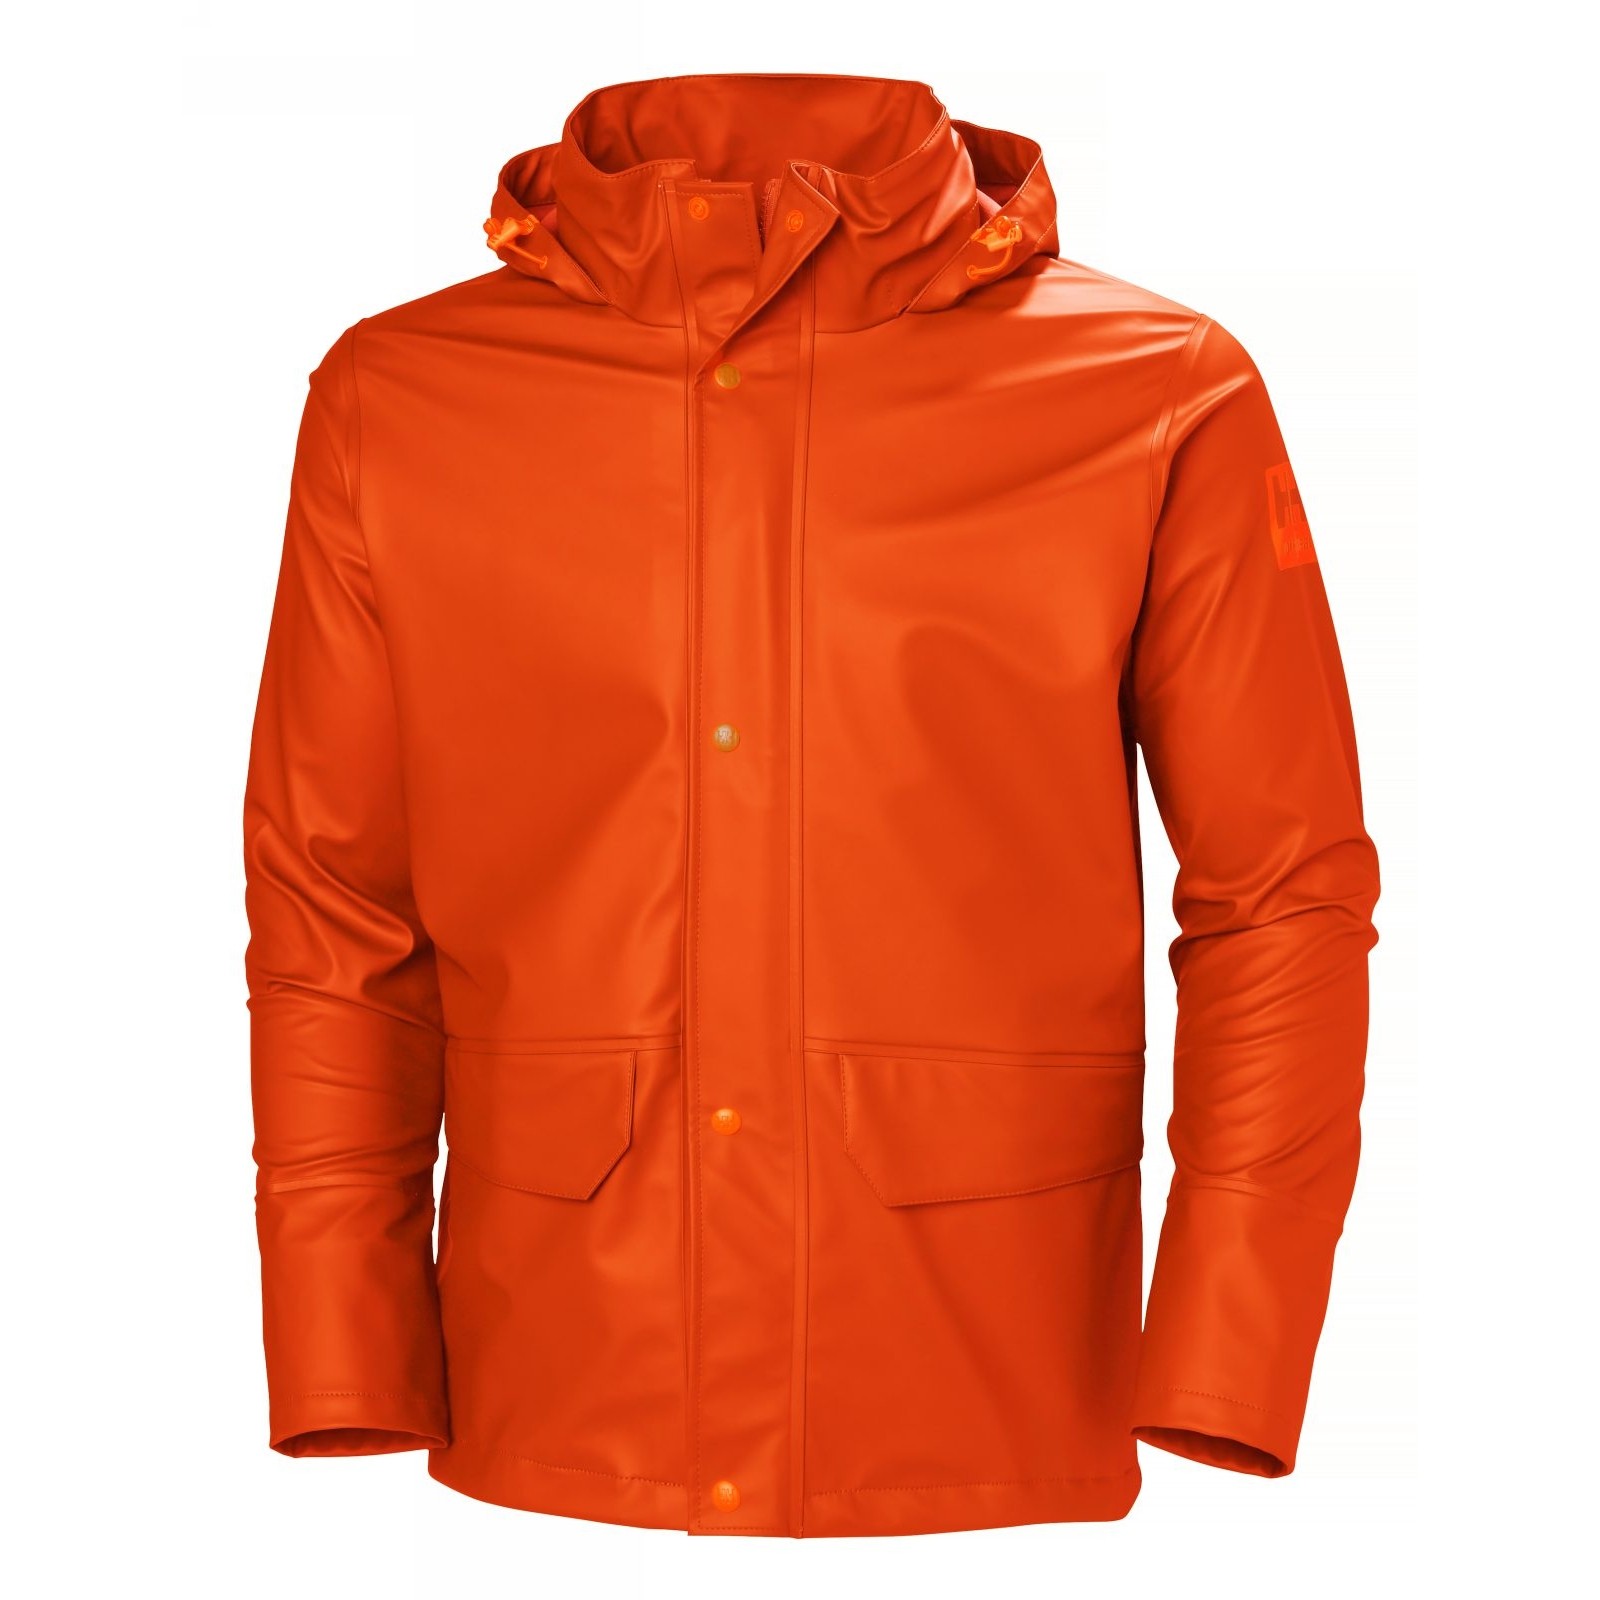 Куртка водонепроницаемая оранжевая Helly Hansen Gale Rain размер S, Osculati 24.502.11